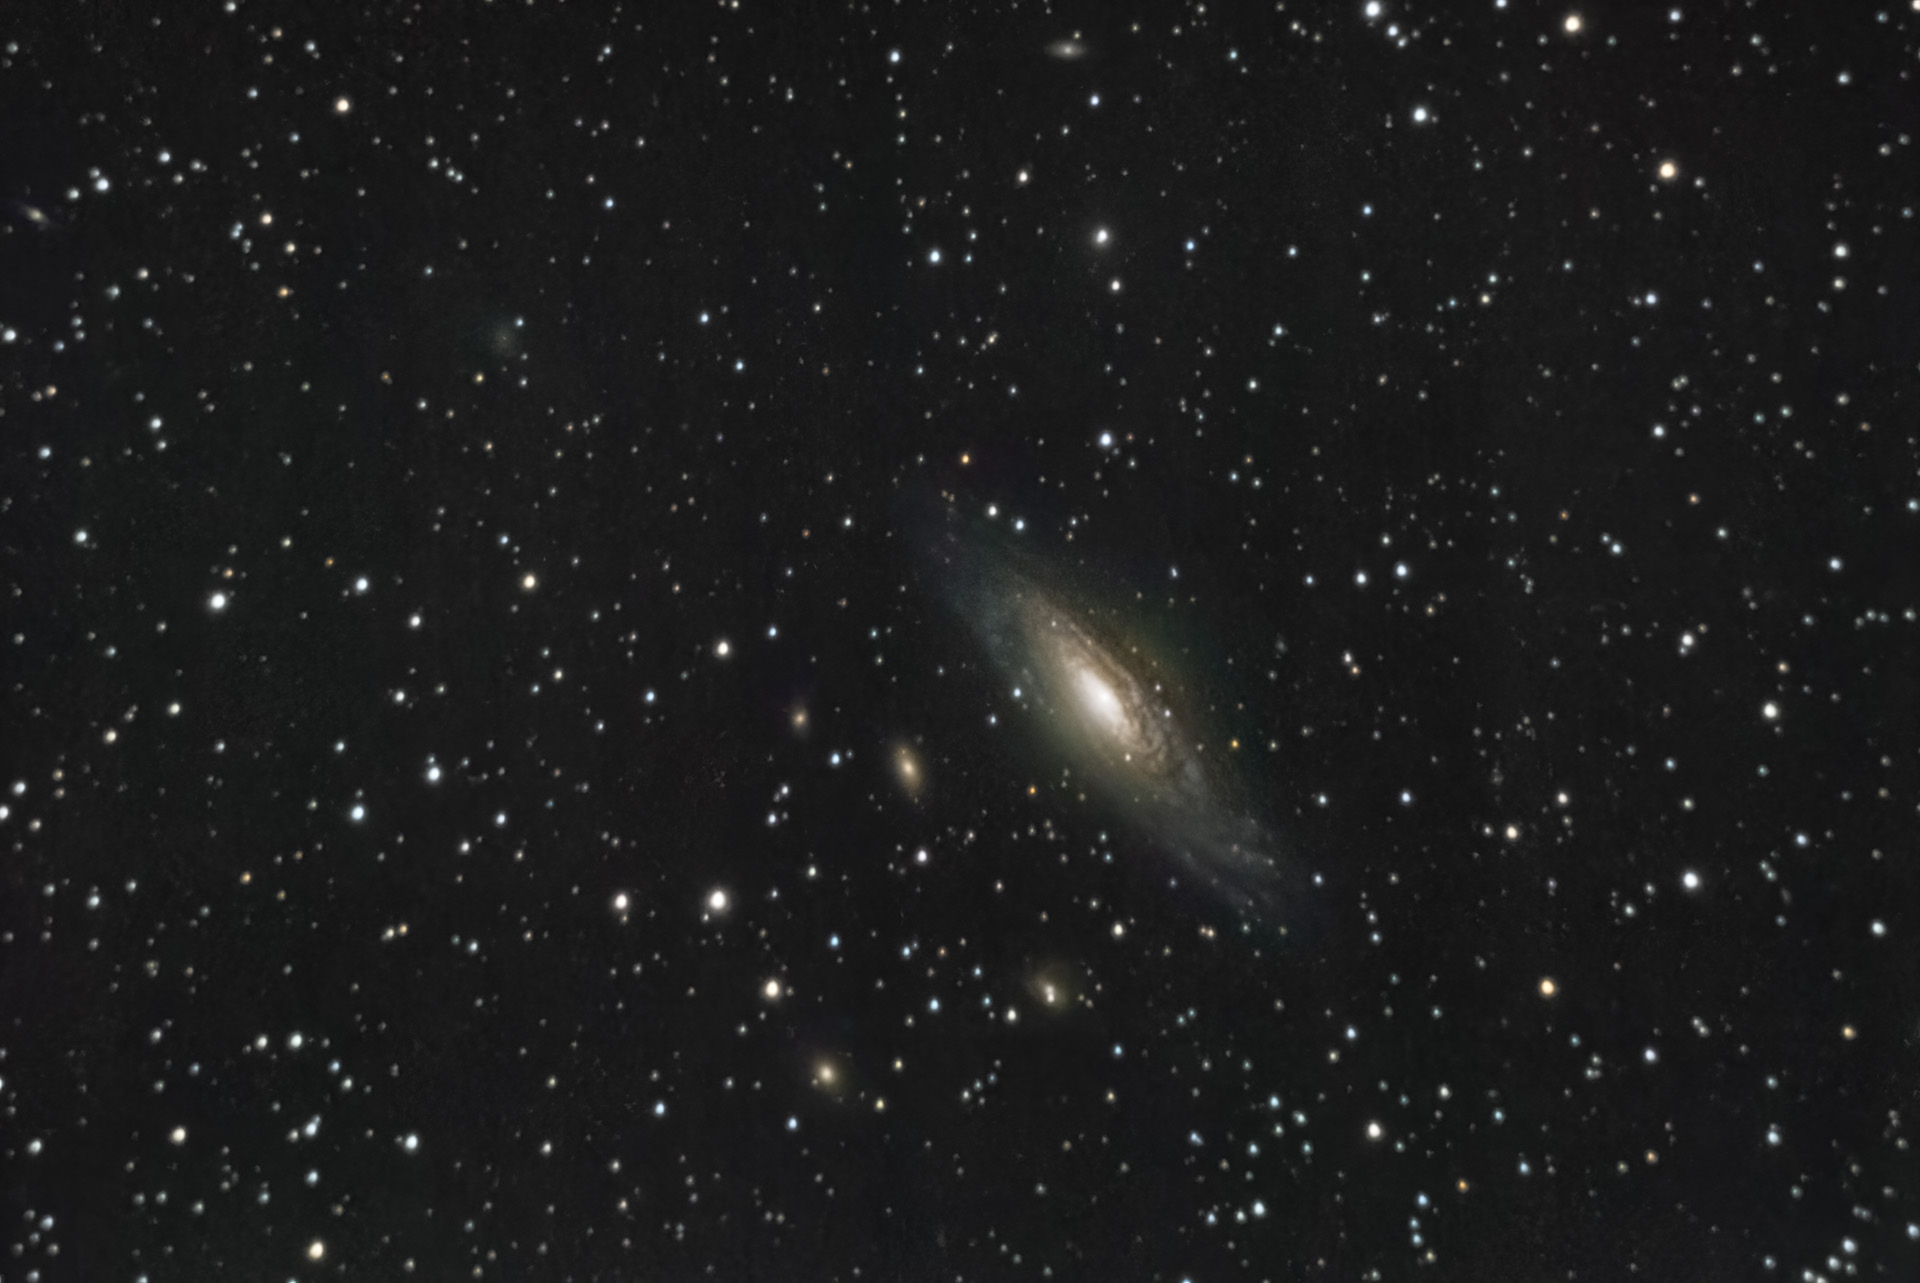 20201105-NGC7331-C8-R063-XT1-6400-L92X60s-D25-F22-SEQ-SIRIL-PS2-1920.jpg.8b05384fabb556a3818d9e4c0c4240bc.jpg